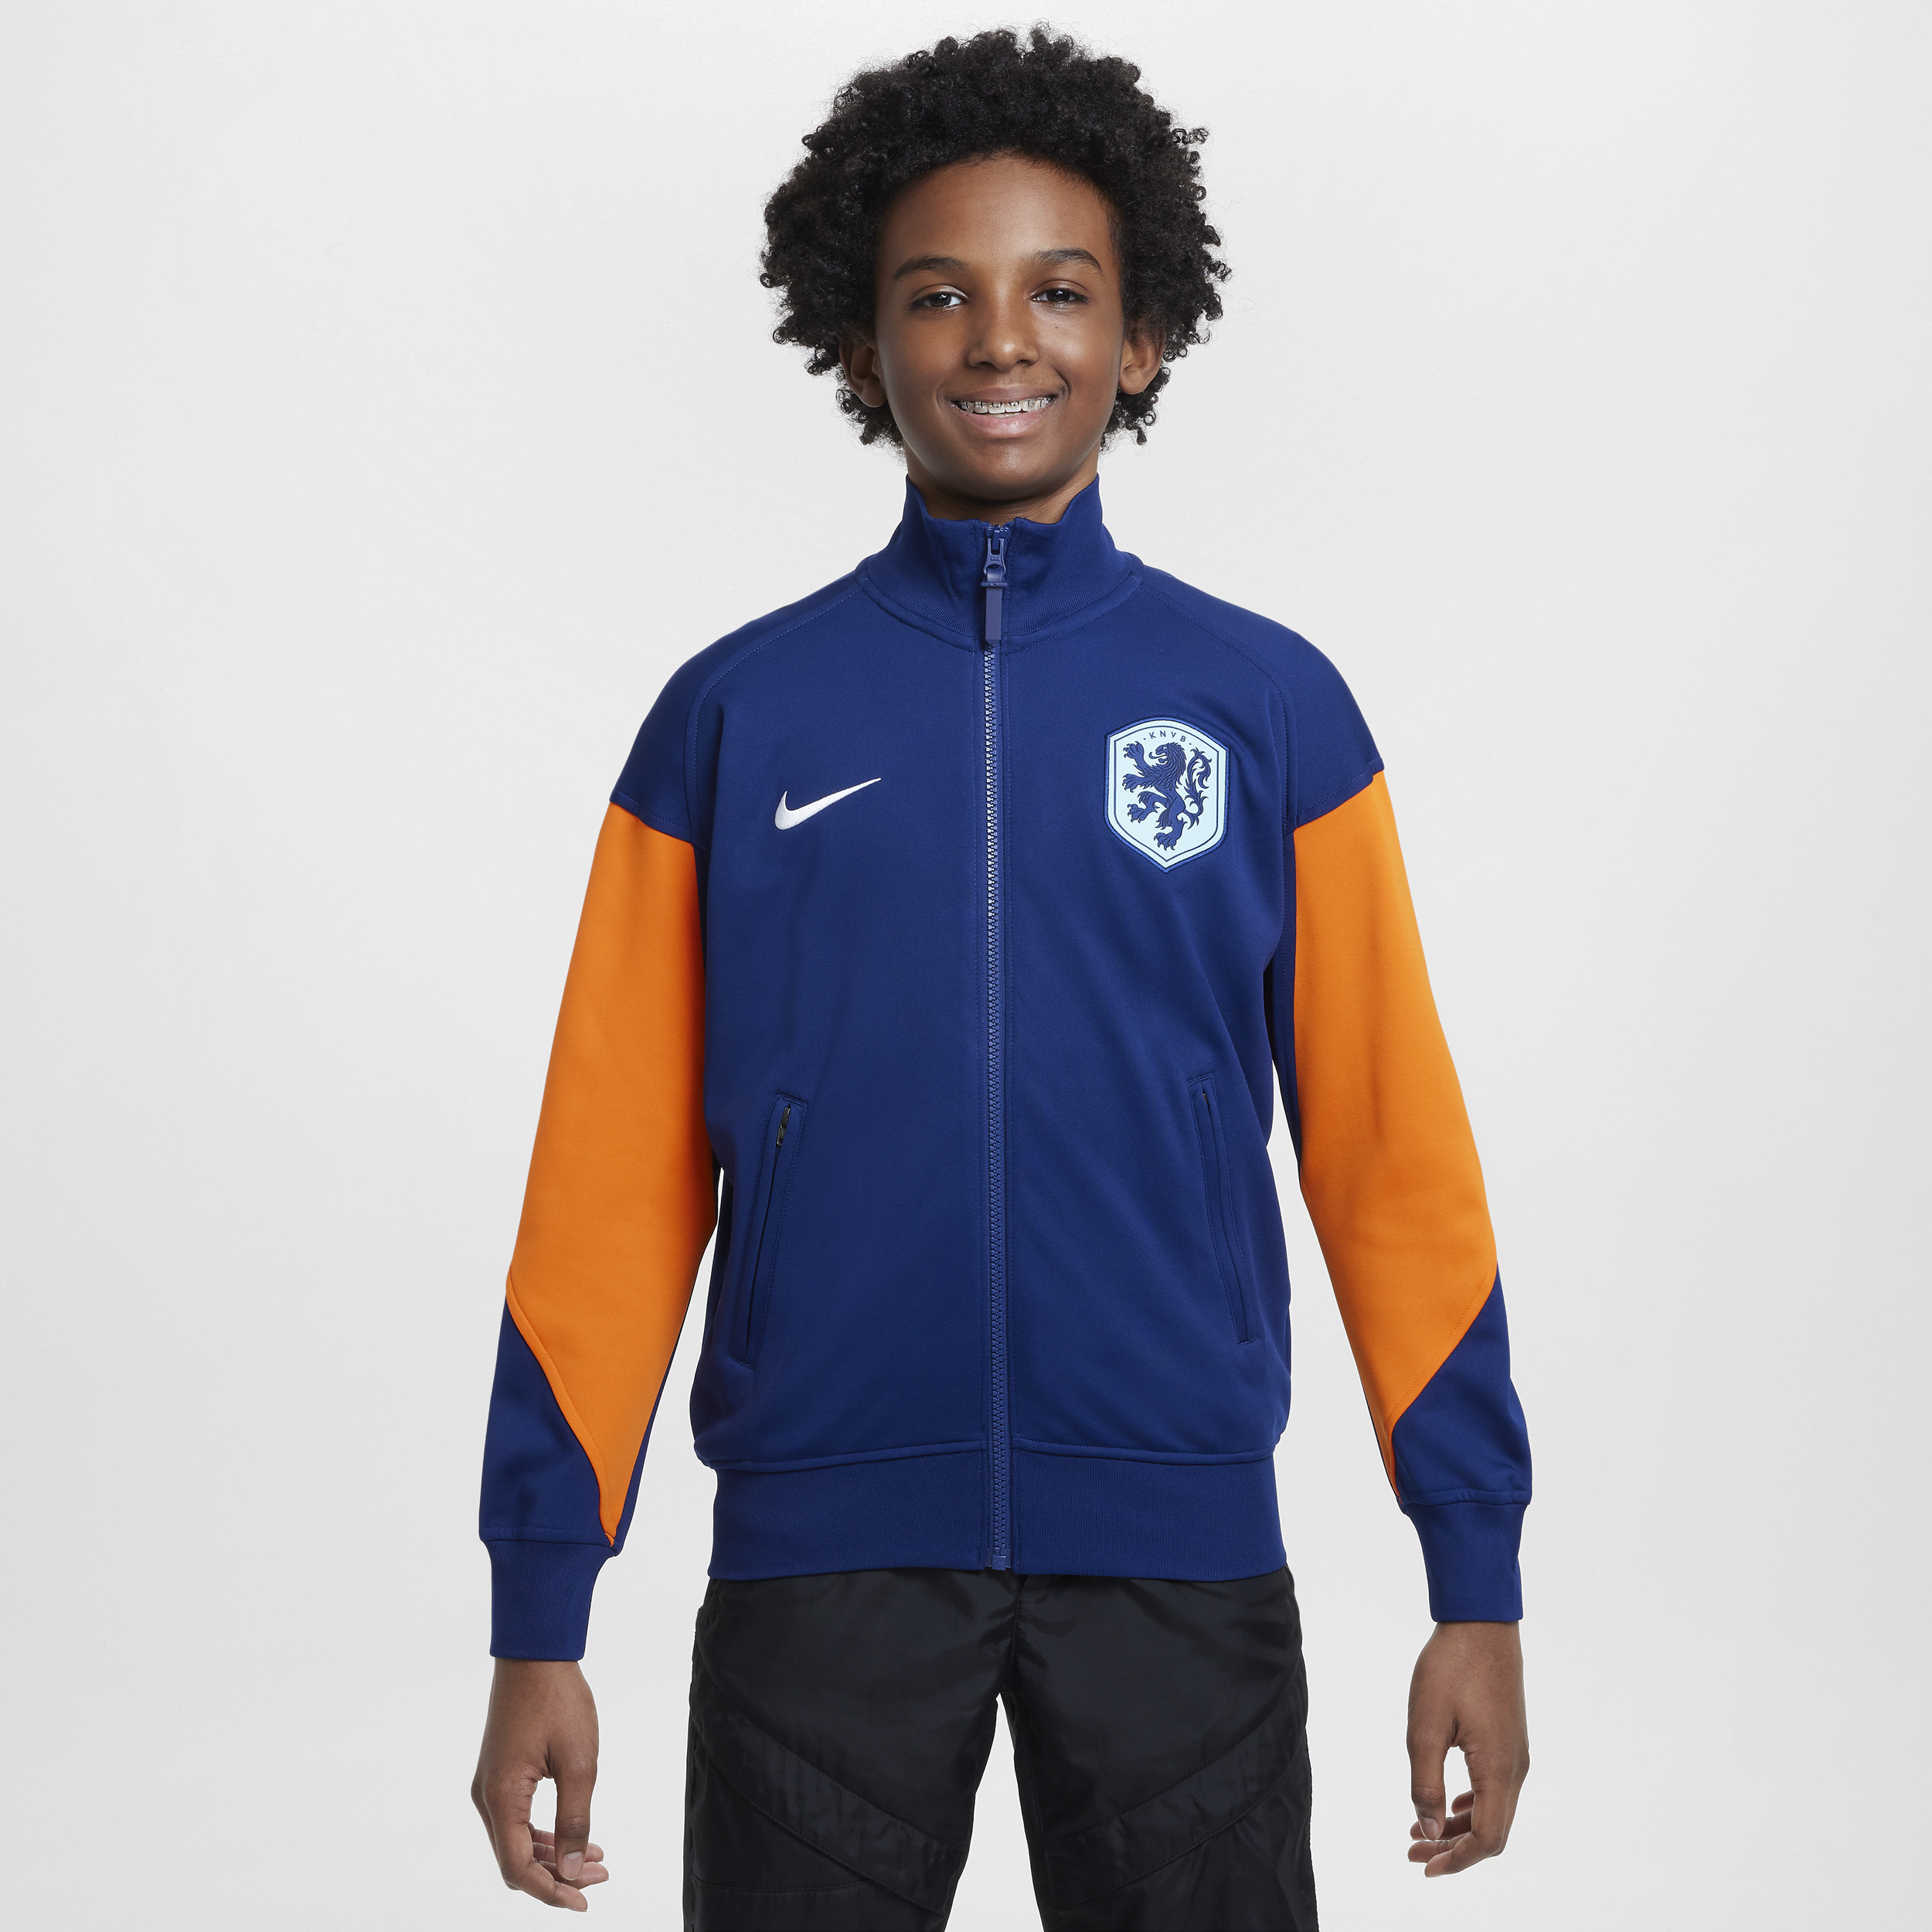 Nike Países Bajos Academy Pro Chaqueta de fútbol de tejido Knit - Niño/a - Azul